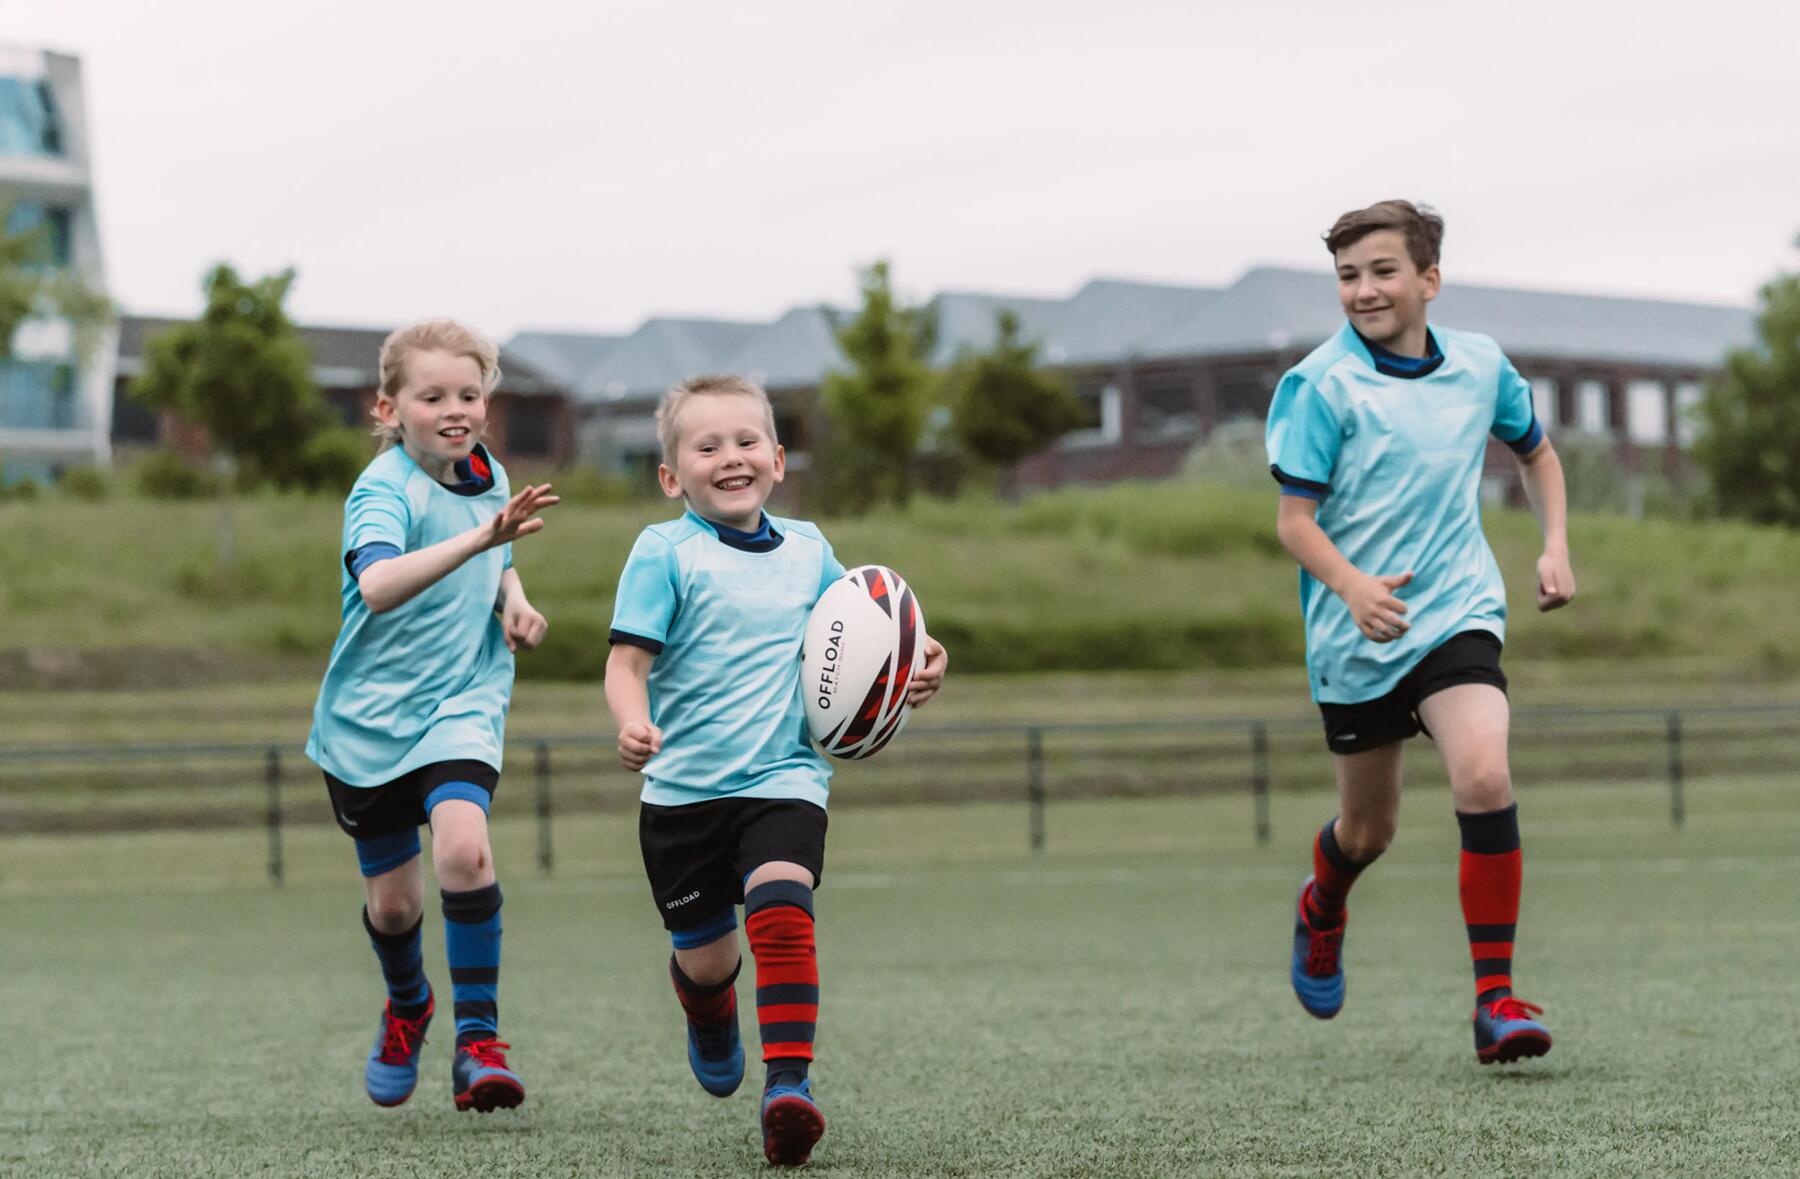 trójka dzieci w odzieży sportowej na boisku gra w rugby